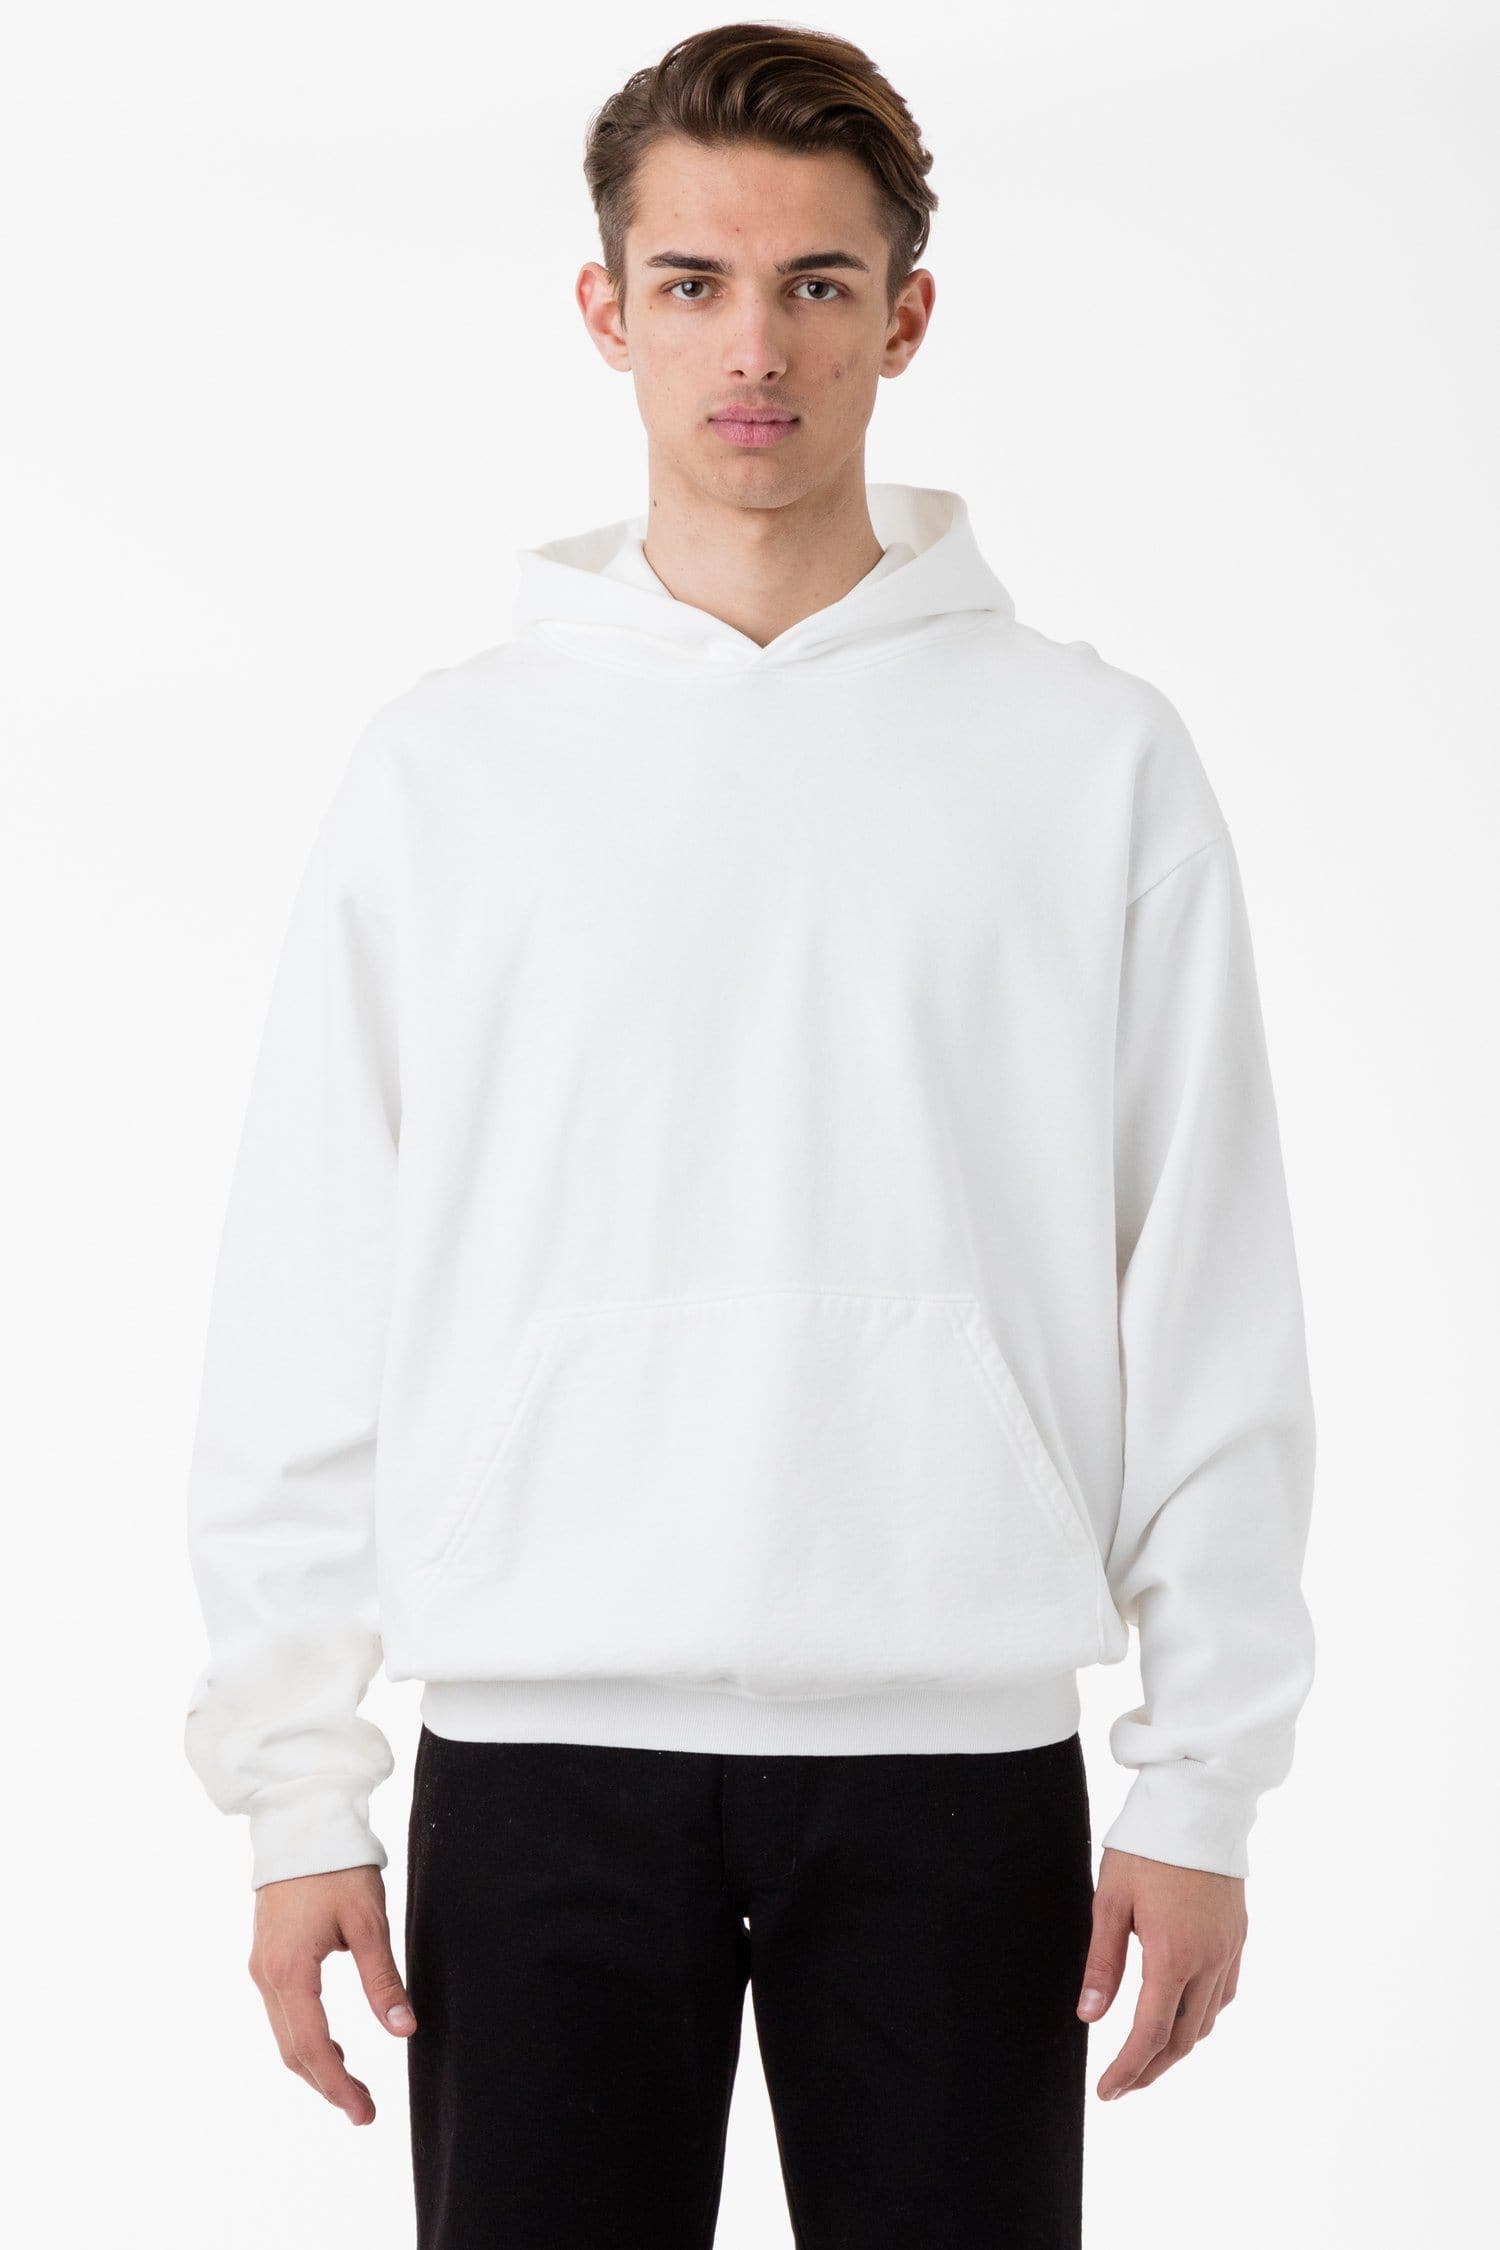 Los Angeles Apparel | Heavy Fleece Zip Up Hooded Sweatshirt for Men in White, Size XL